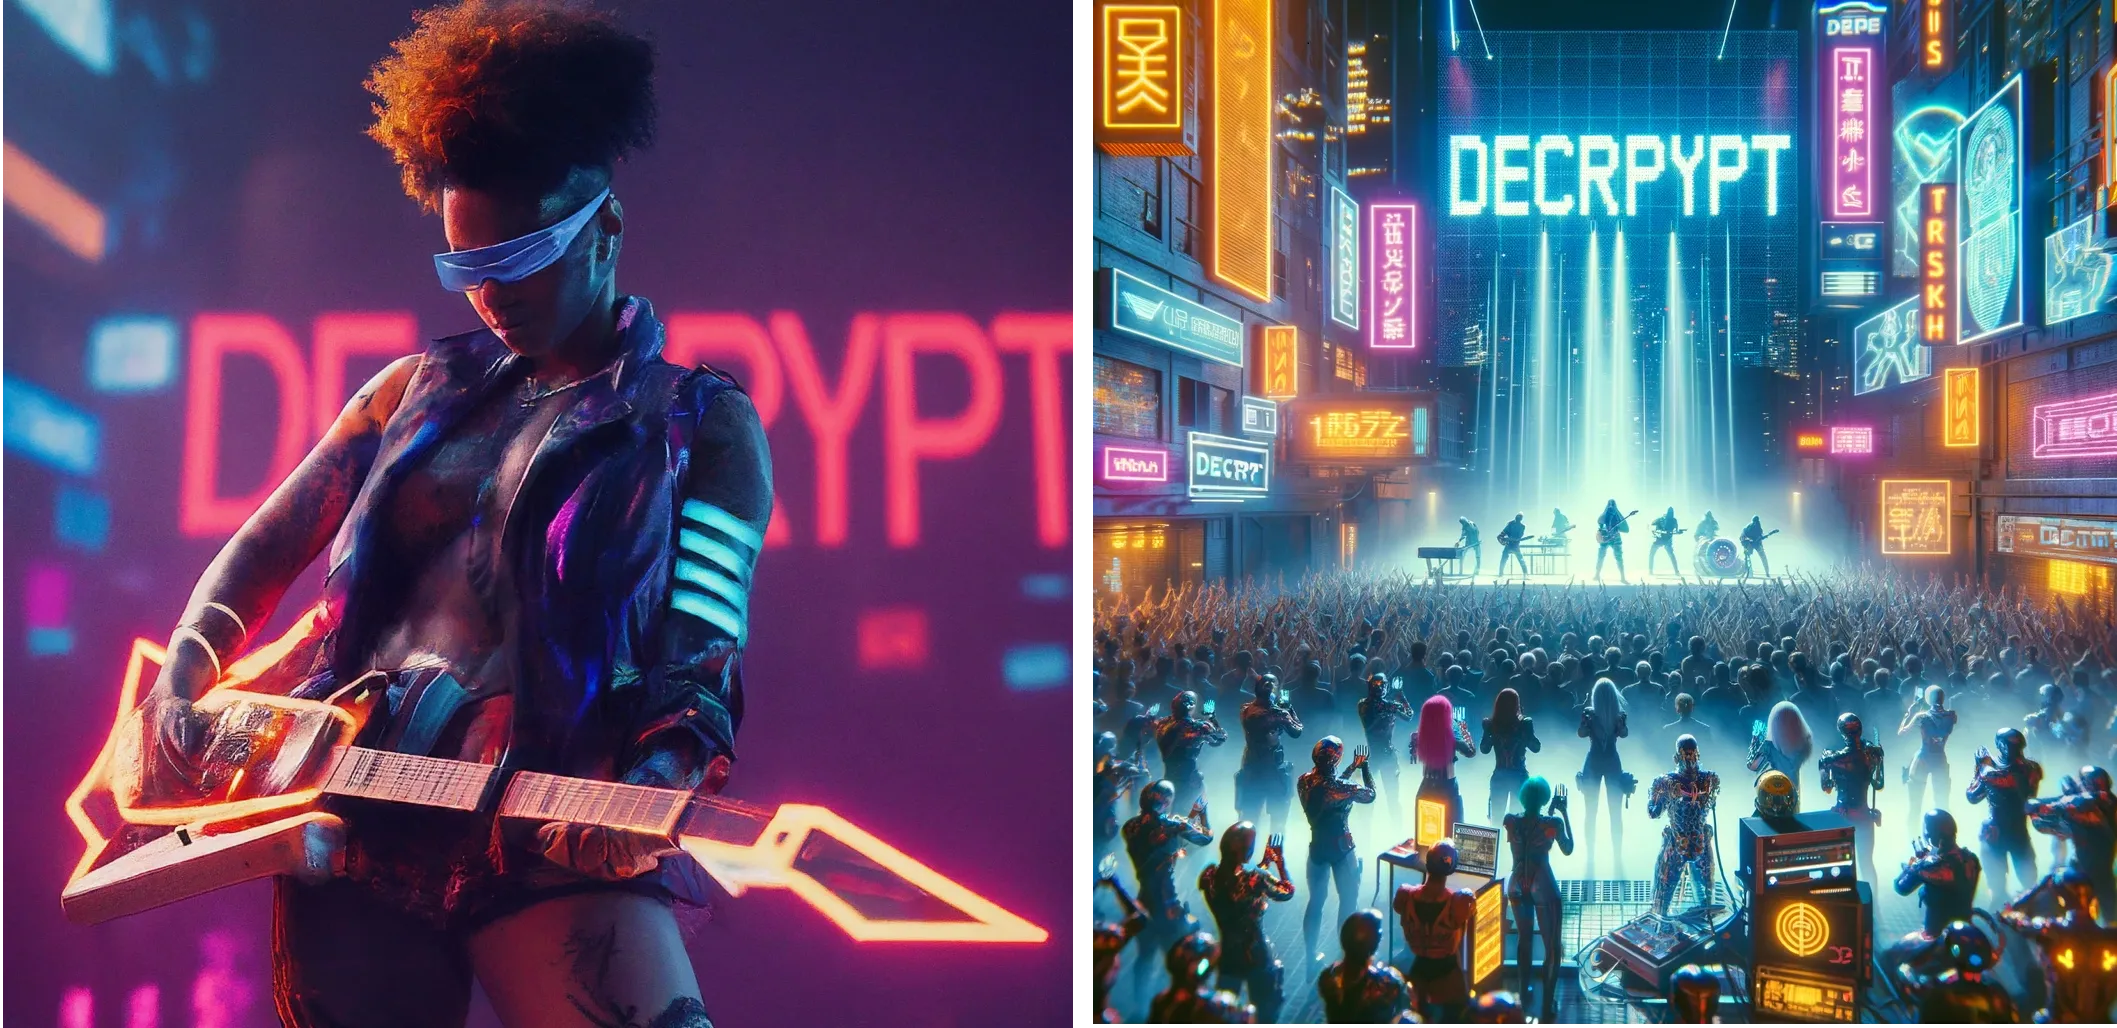 Artista futurista cyberpunk se apresentando no palco com a palavra "DECRYPT" em luzes neon ao fundo. Gêmeos (esquerda) vs ChatGPT Plus (direita)